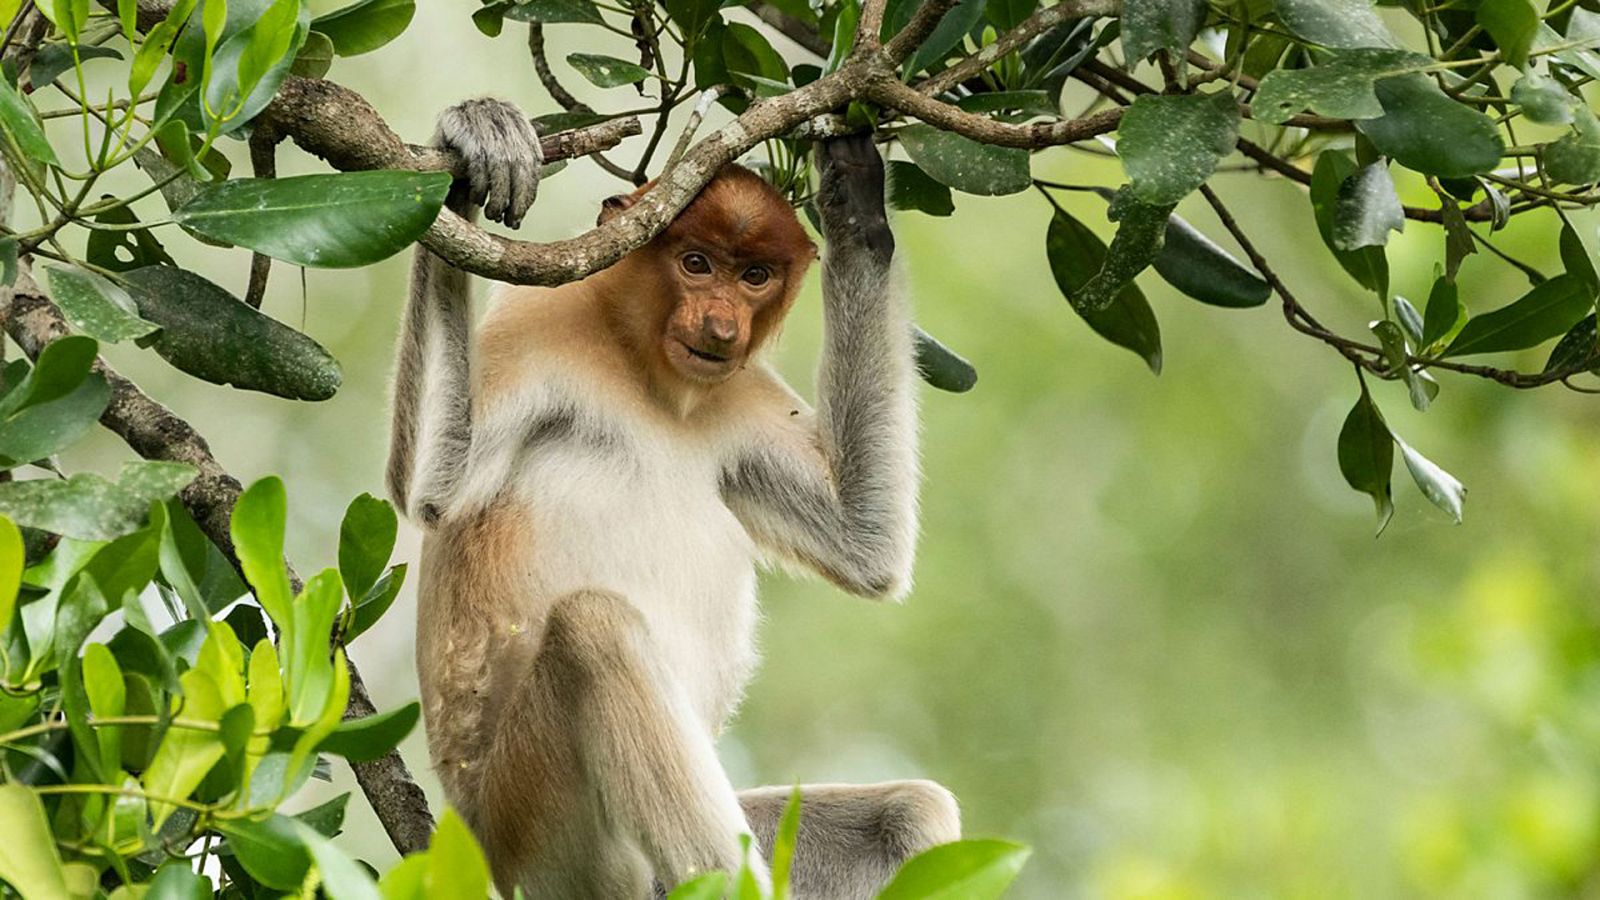 Edén: Paraísos remotos - Episodio 1: Borneo: El bosque sagrado - Documental en RTVE